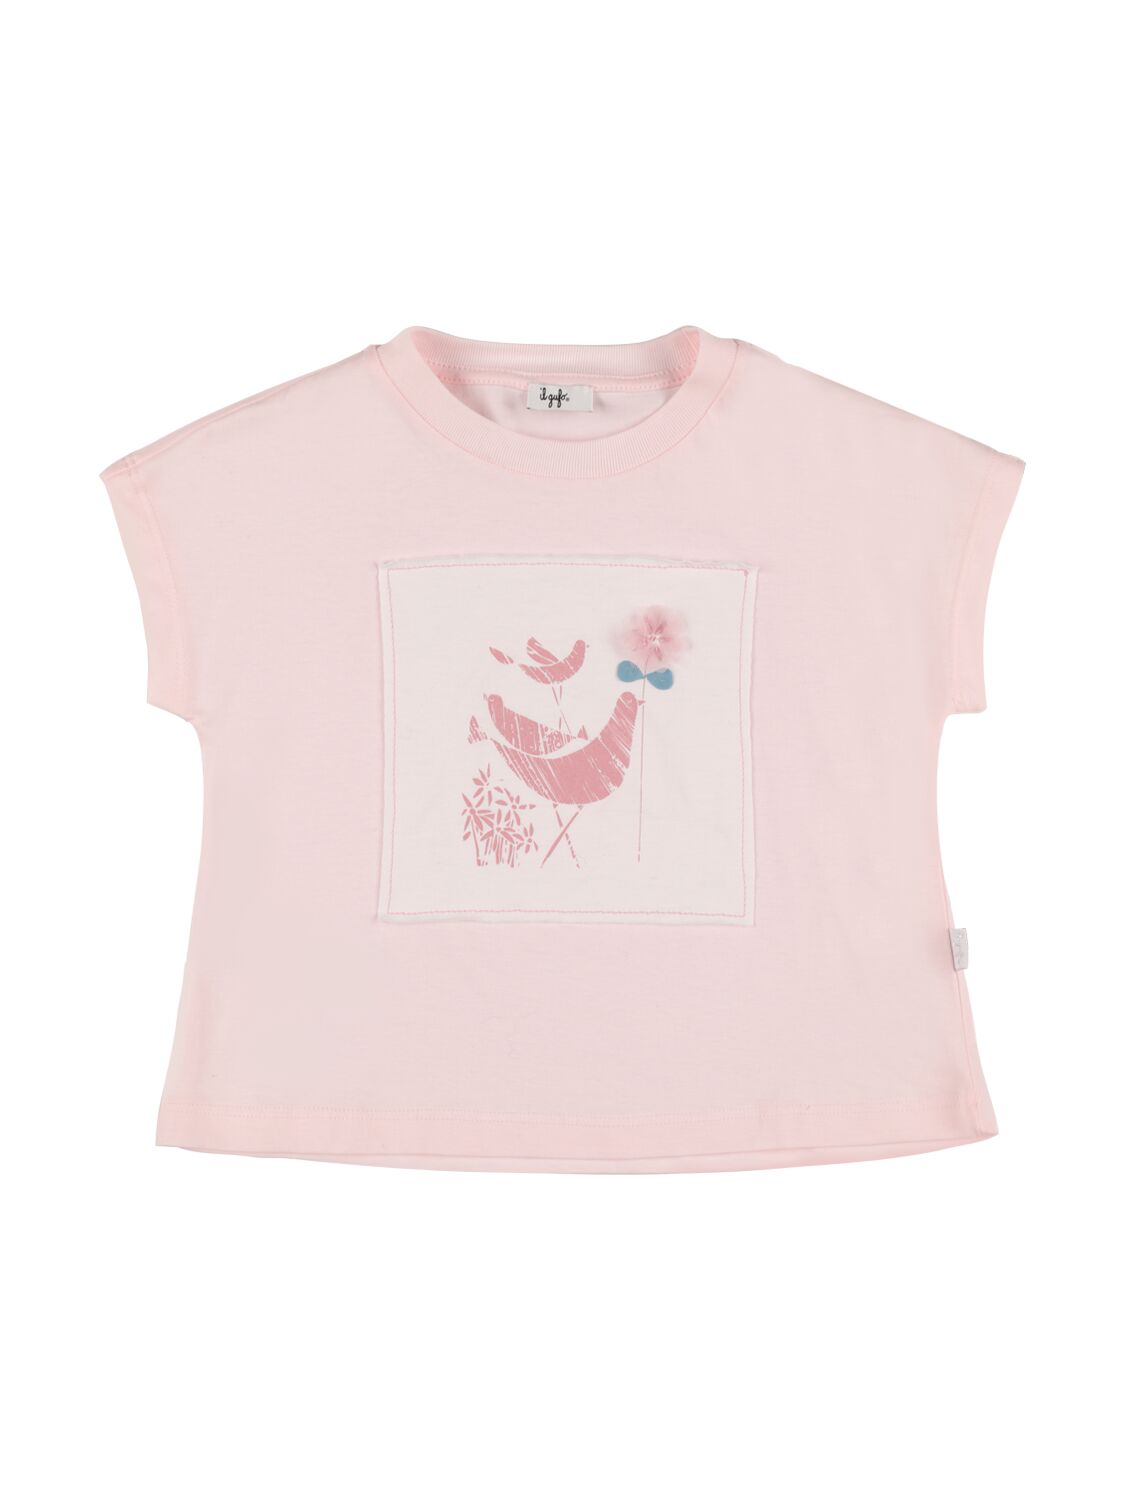 Il Gufo Kids' 刺绣棉质平纹针织t恤 In Pink,white